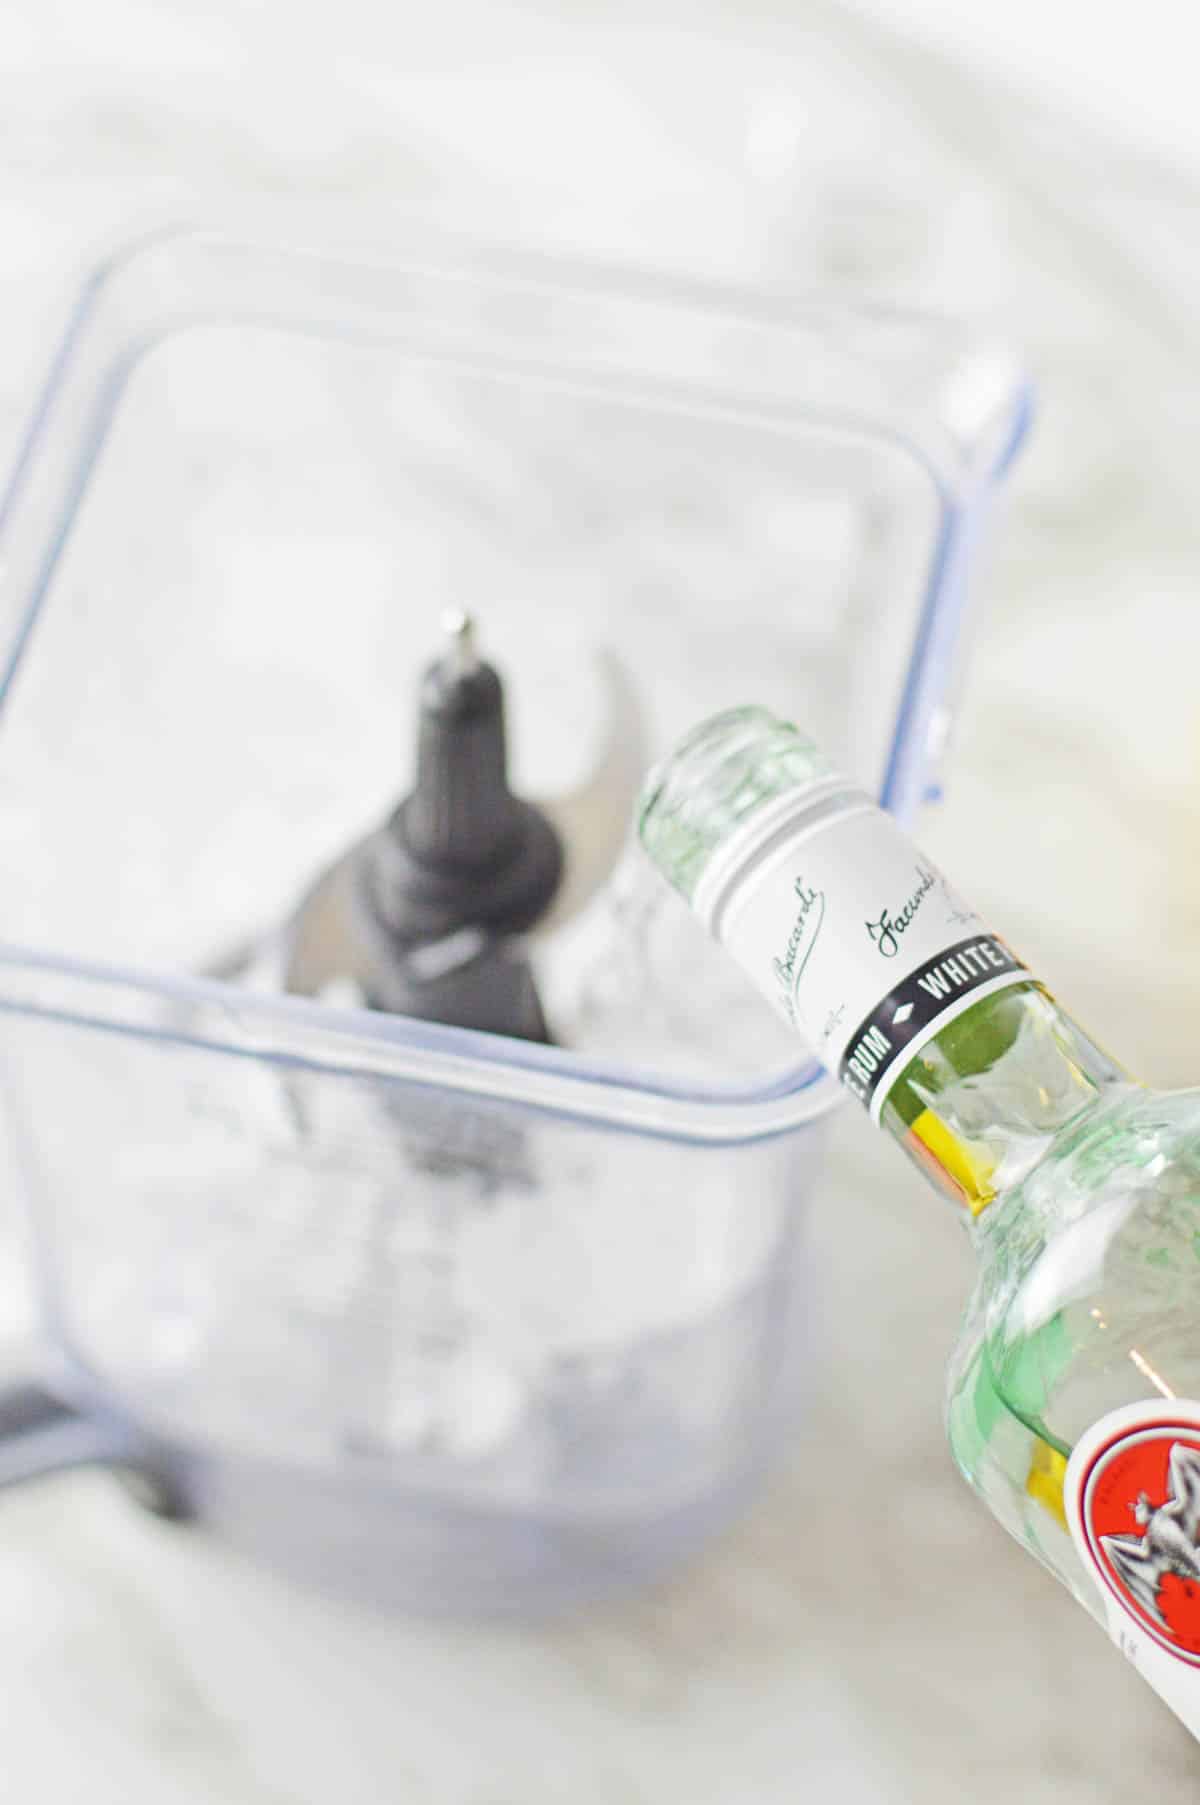 Adding rum to blender.